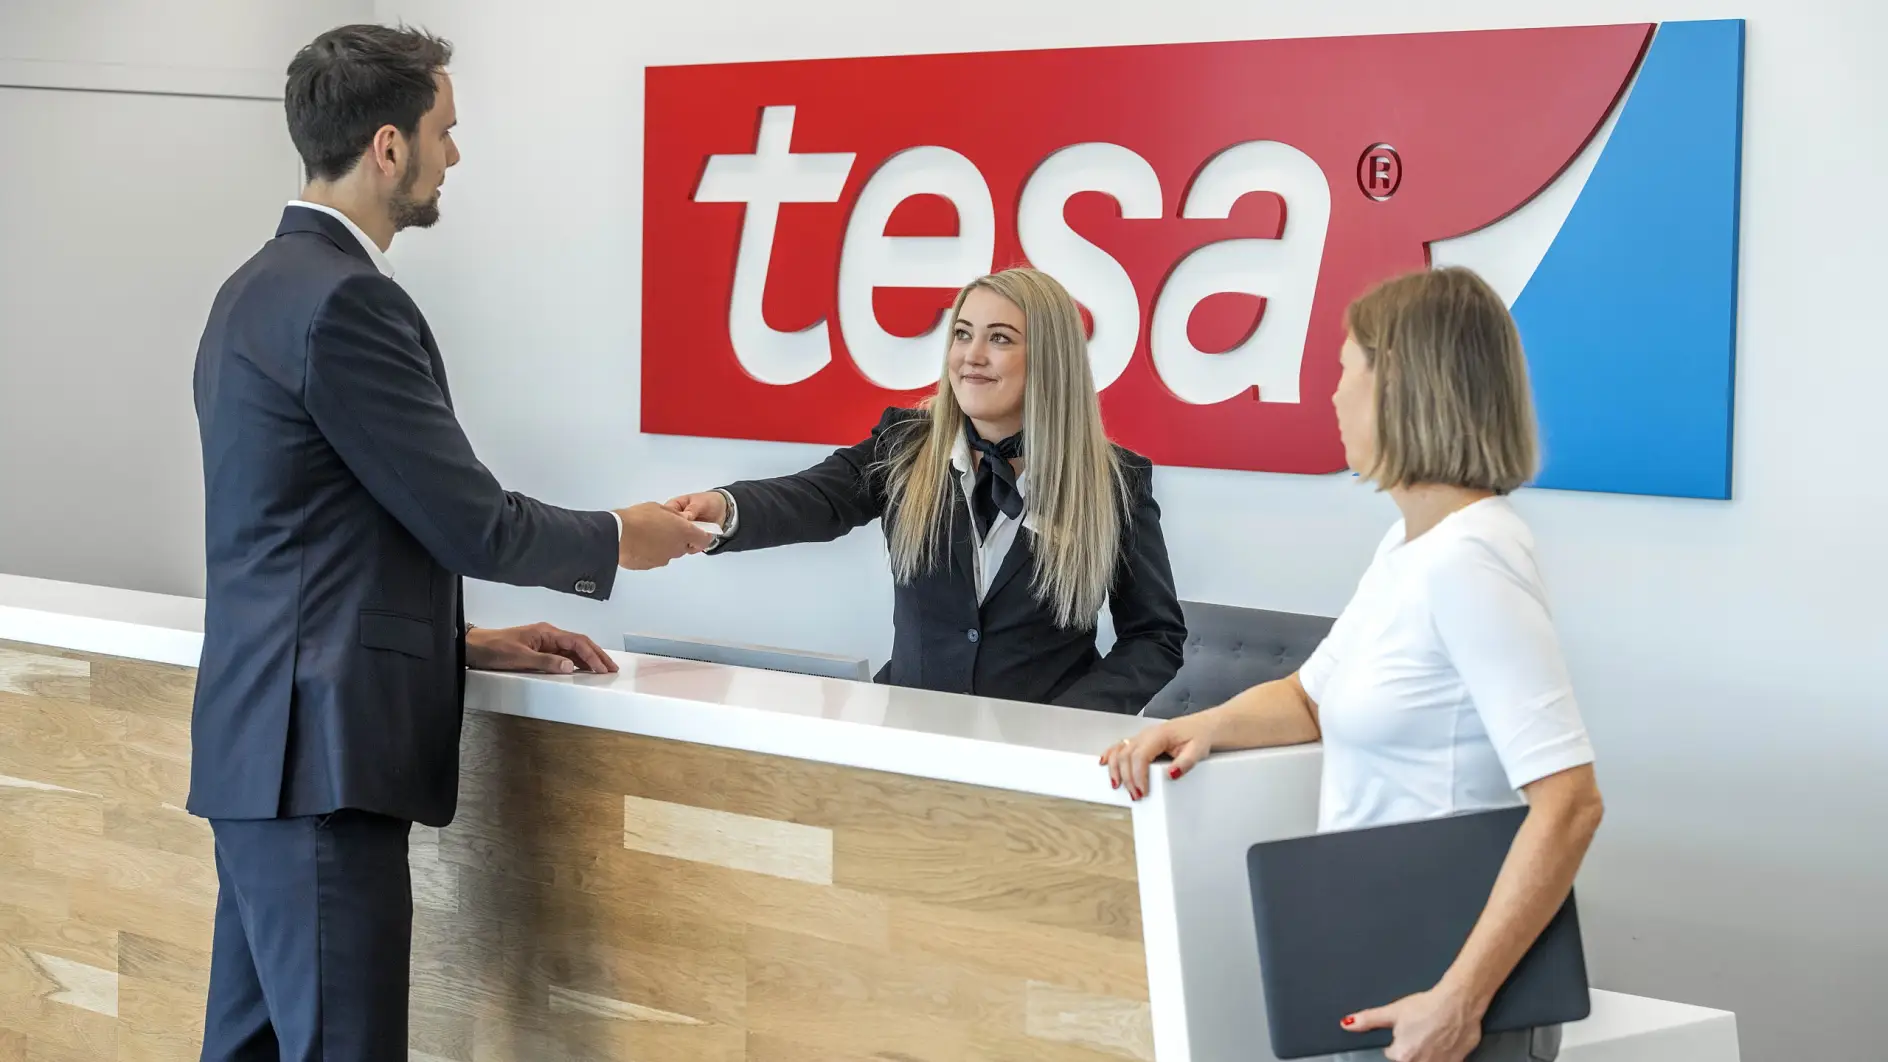 tesa as an Employer